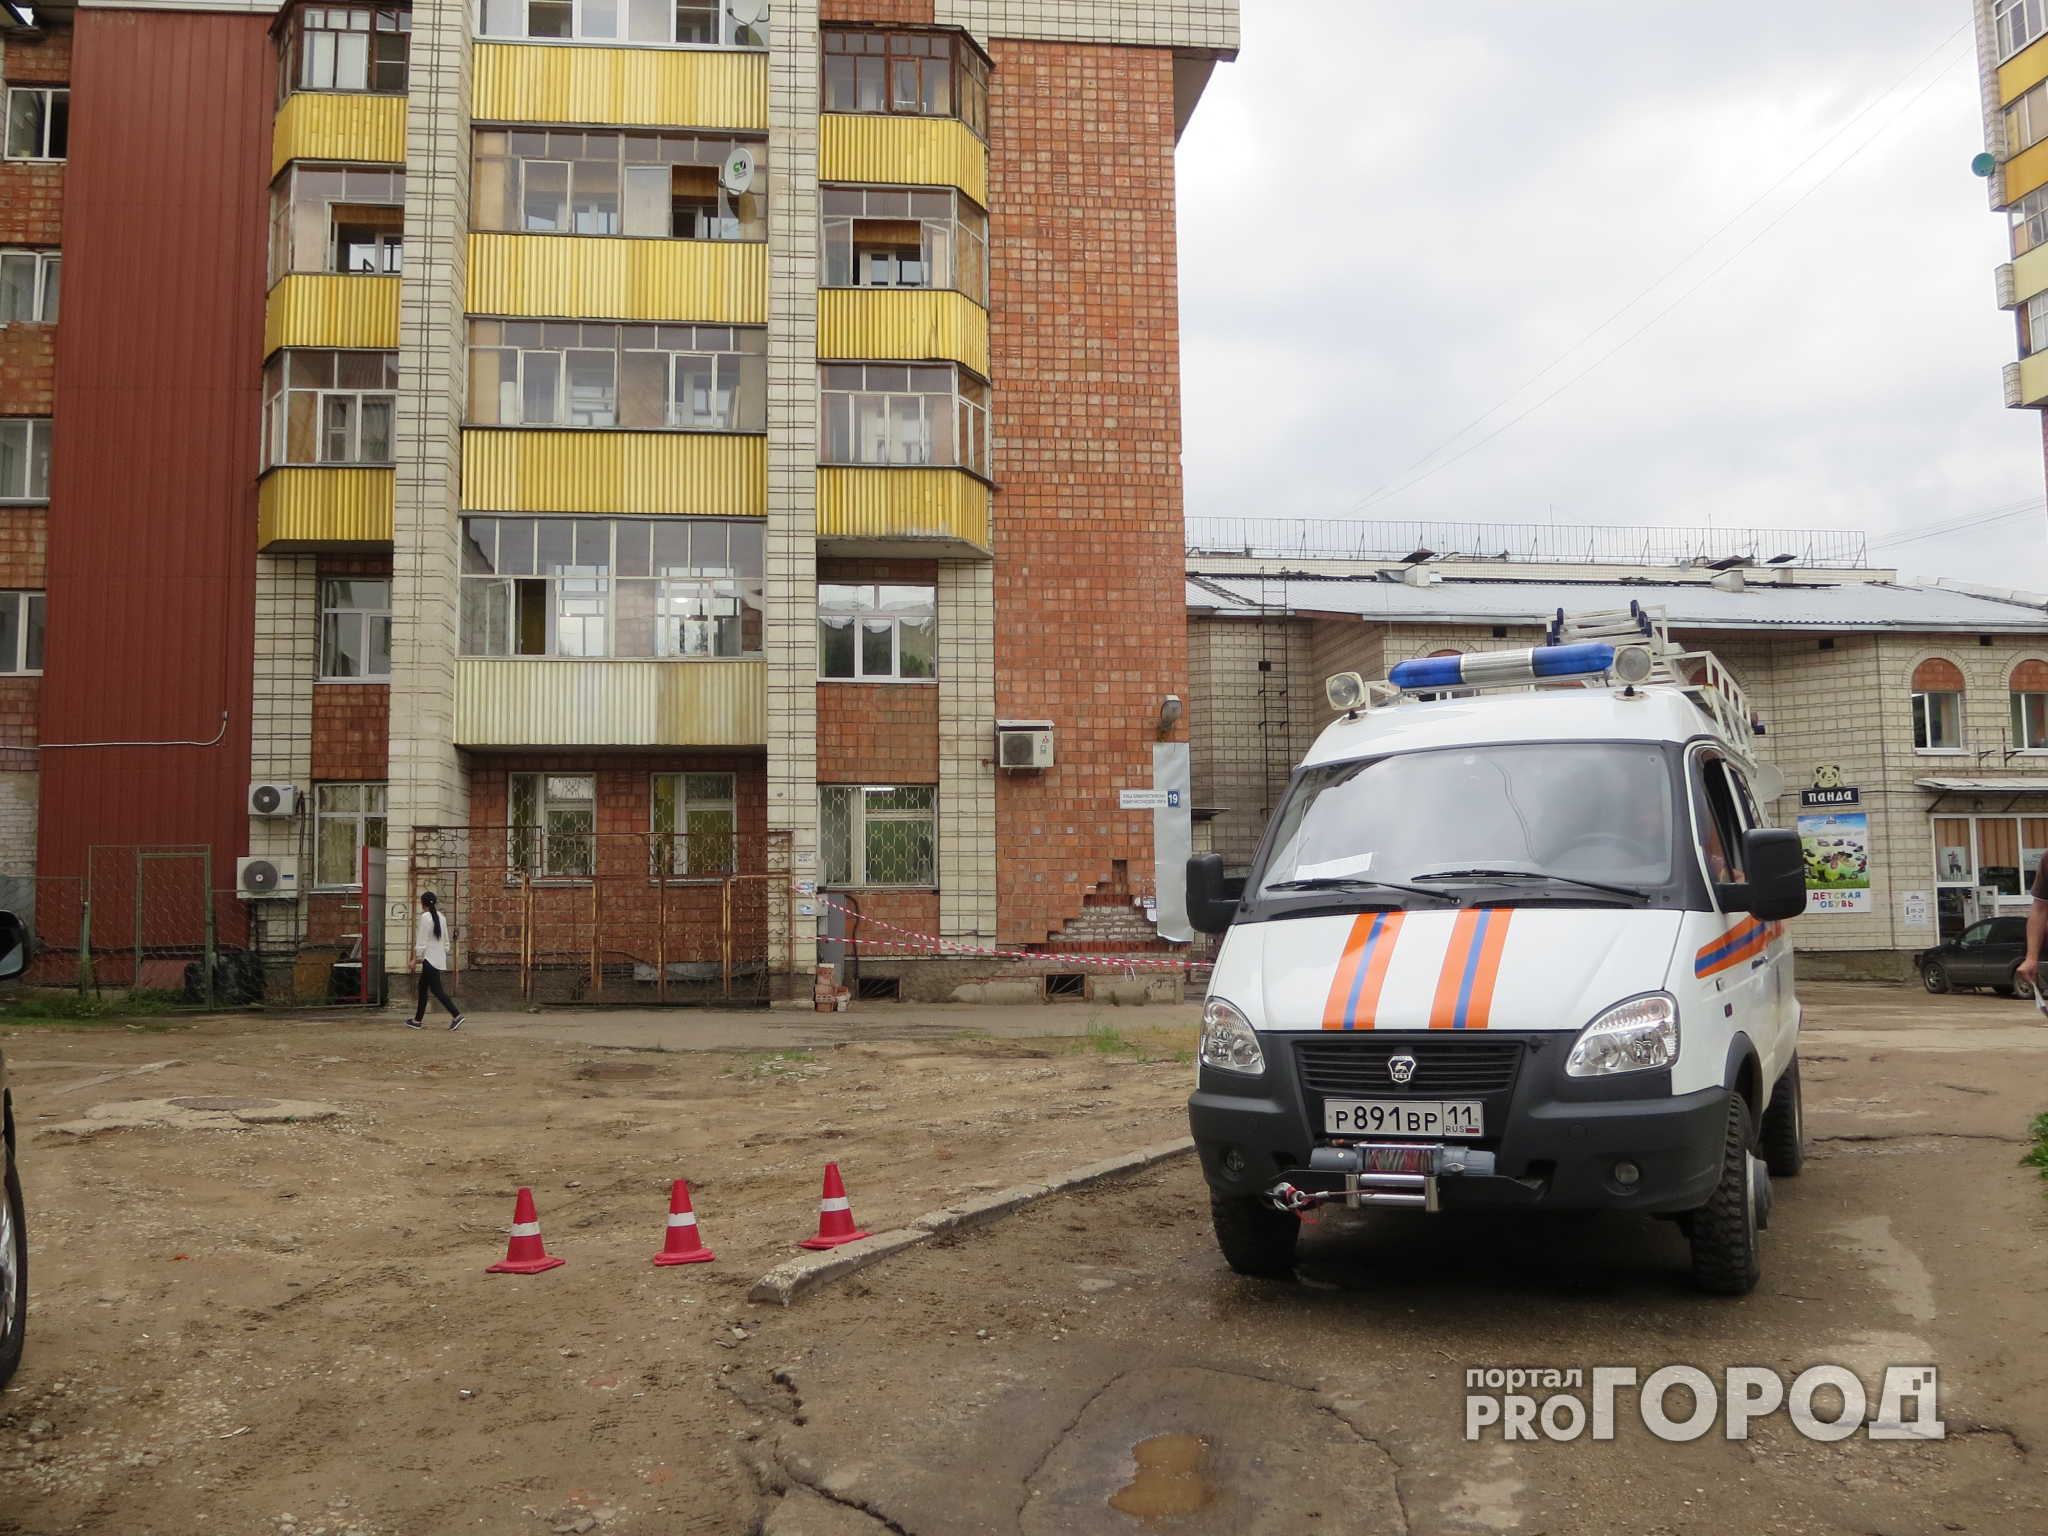 Появились фото с места обрушения части облицовки жилого дома в центре Сыктывкара (фото)